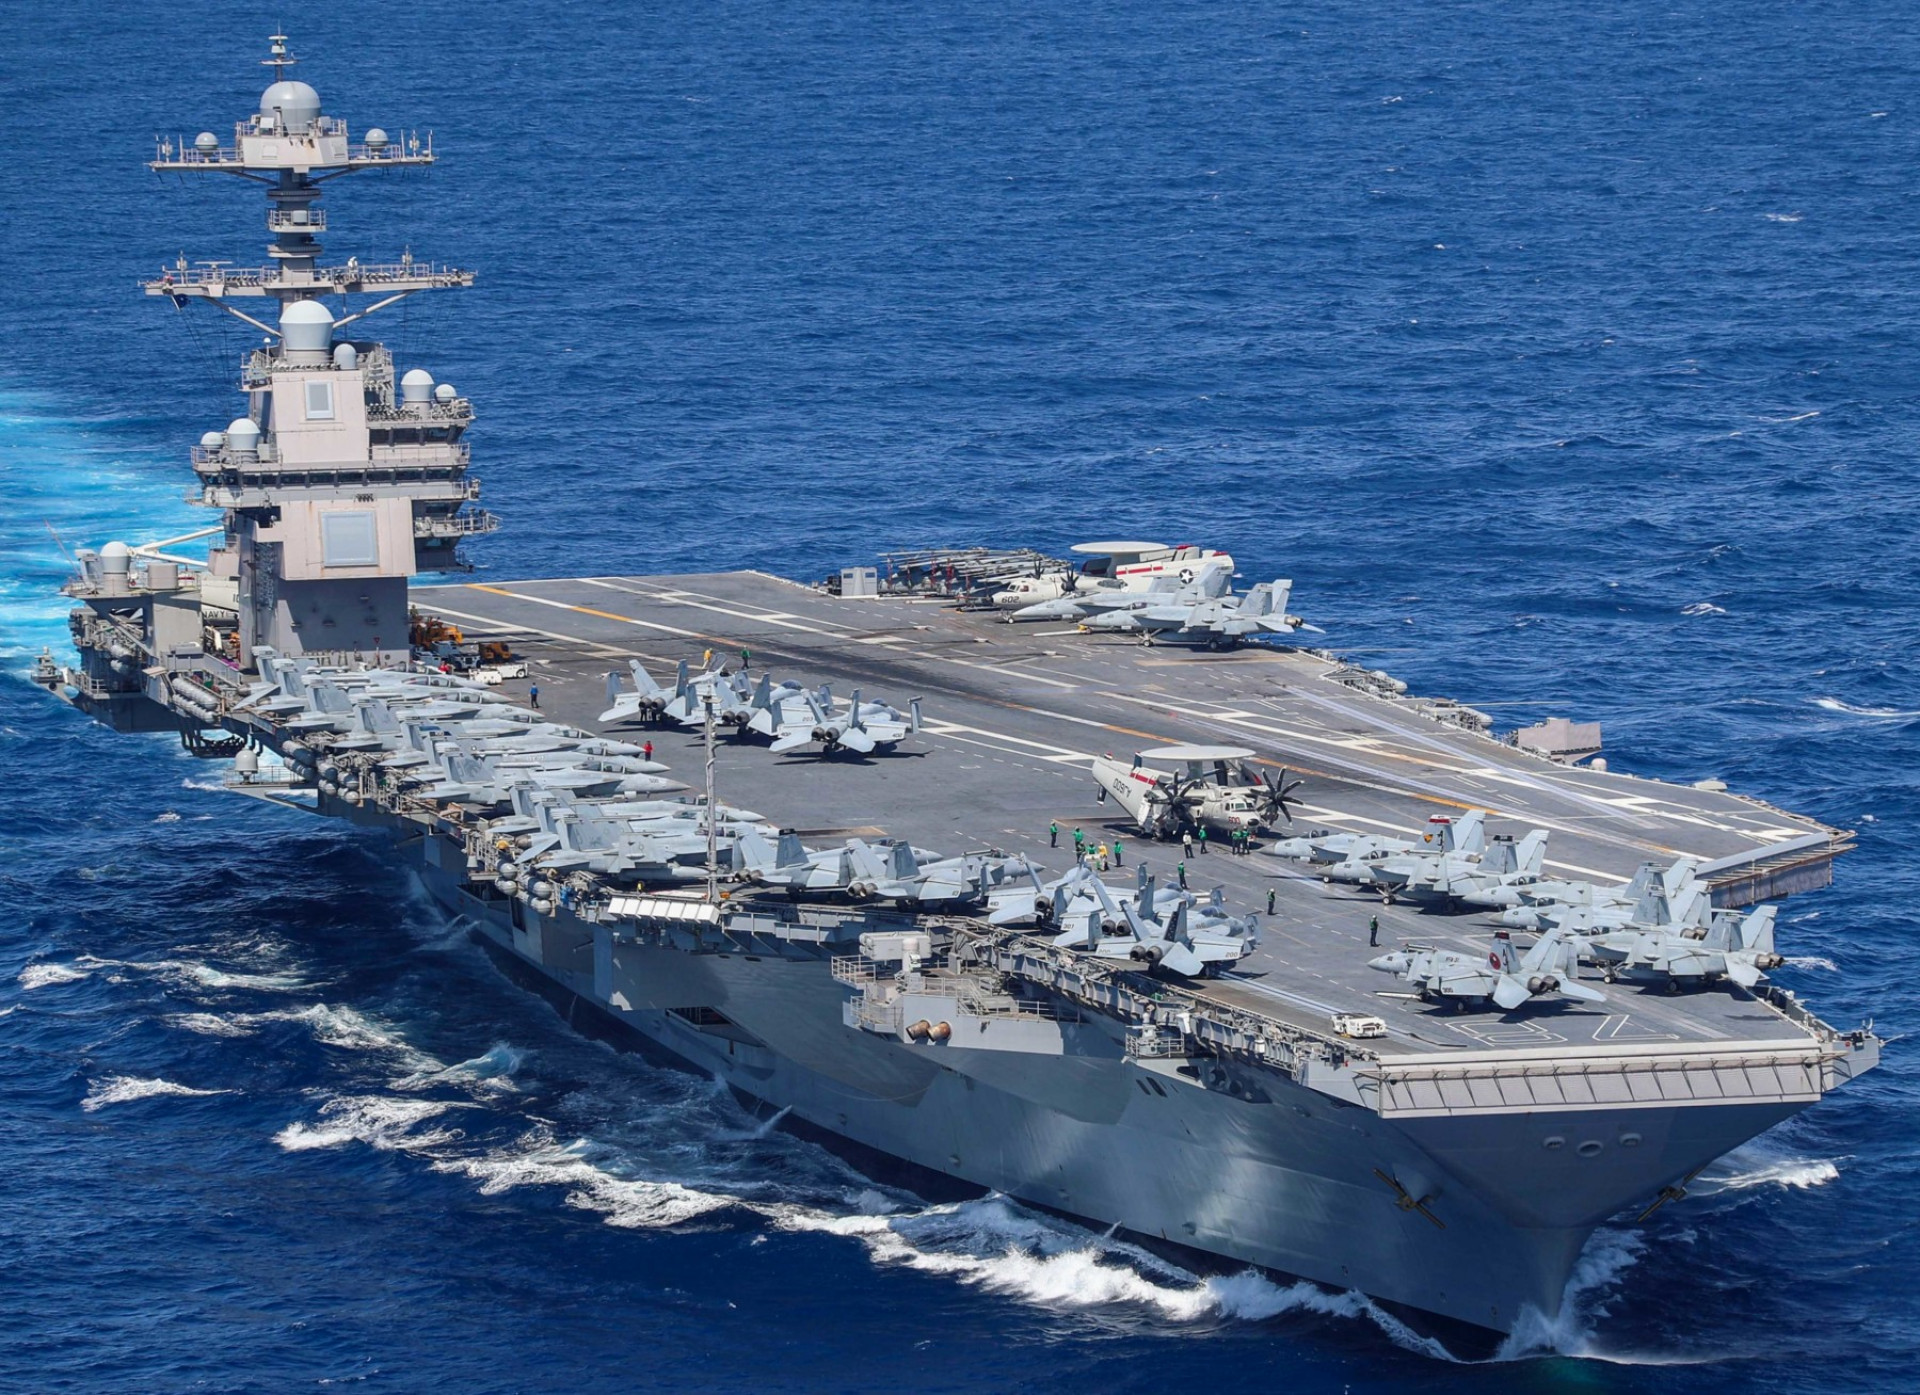 Stany Zjednoczone wysłały do Izraela największy na świecie lotniskowiec USS Gerald R. Ford wraz z pięcioma niszczycielami klasy Arleigh Burke i krążownikiem rakietowym USS Normandy